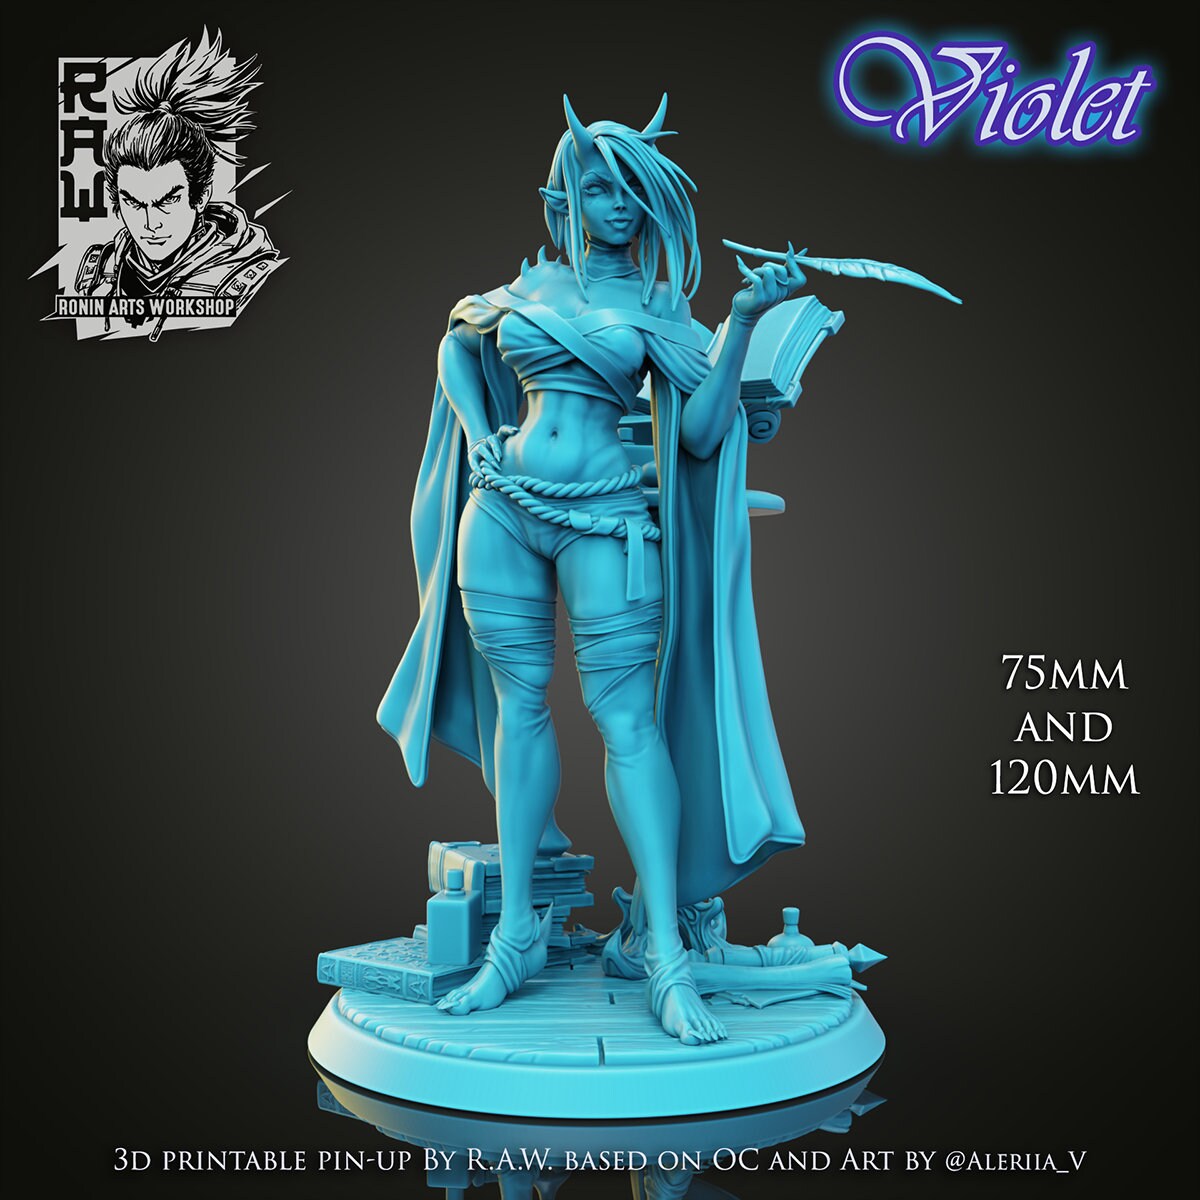 Violet the Alchemist Pinup | Clothed or Nude | Resin 3D Printed Pinup | Ronin Arts Workshop